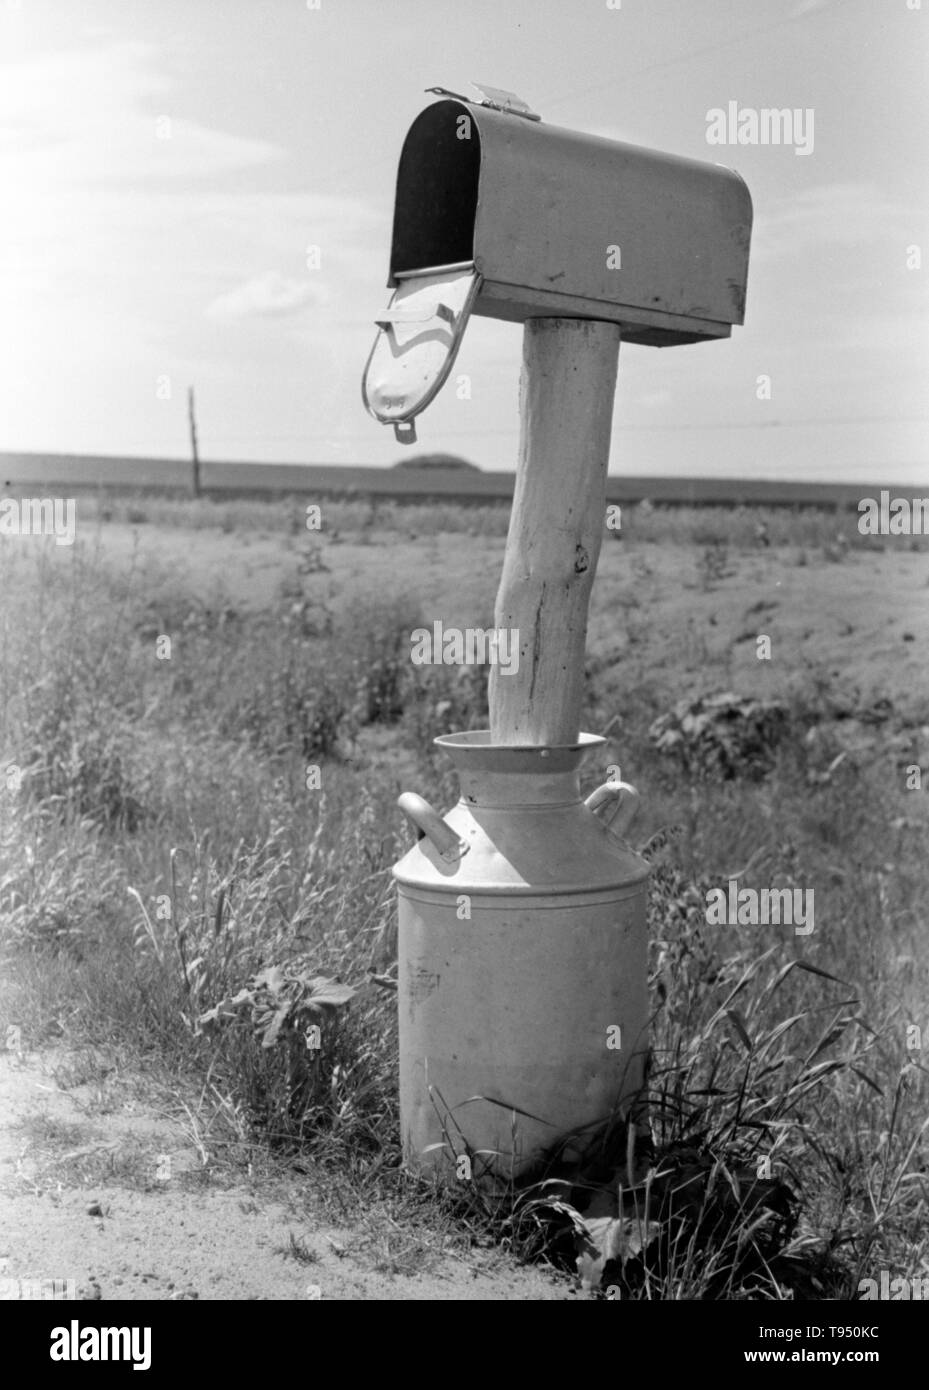 Titel: 'Mail-Box kann in der Nähe von Hydro, Oklahoma in der Milch festgelegt." Vor der Einführung des ländlichen Kostenlose Lieferung (RFD) von der Post im Jahr 1896, viele ländliche Bewohner hatten keinen Zugang zu E-Mail, es sei denn Sie sie in einem Postamt viele Meilen entfernt von ihren Häusern gesammelt oder angestellt, ein eigenes Unternehmen zu liefern. Aus diesem Grund, Mailboxen nicht beliebt im ländlichen Amerika geworden, bis Bordsteinkante RFD Zustellung durch die Post war ein etablierter Service. Stockfoto